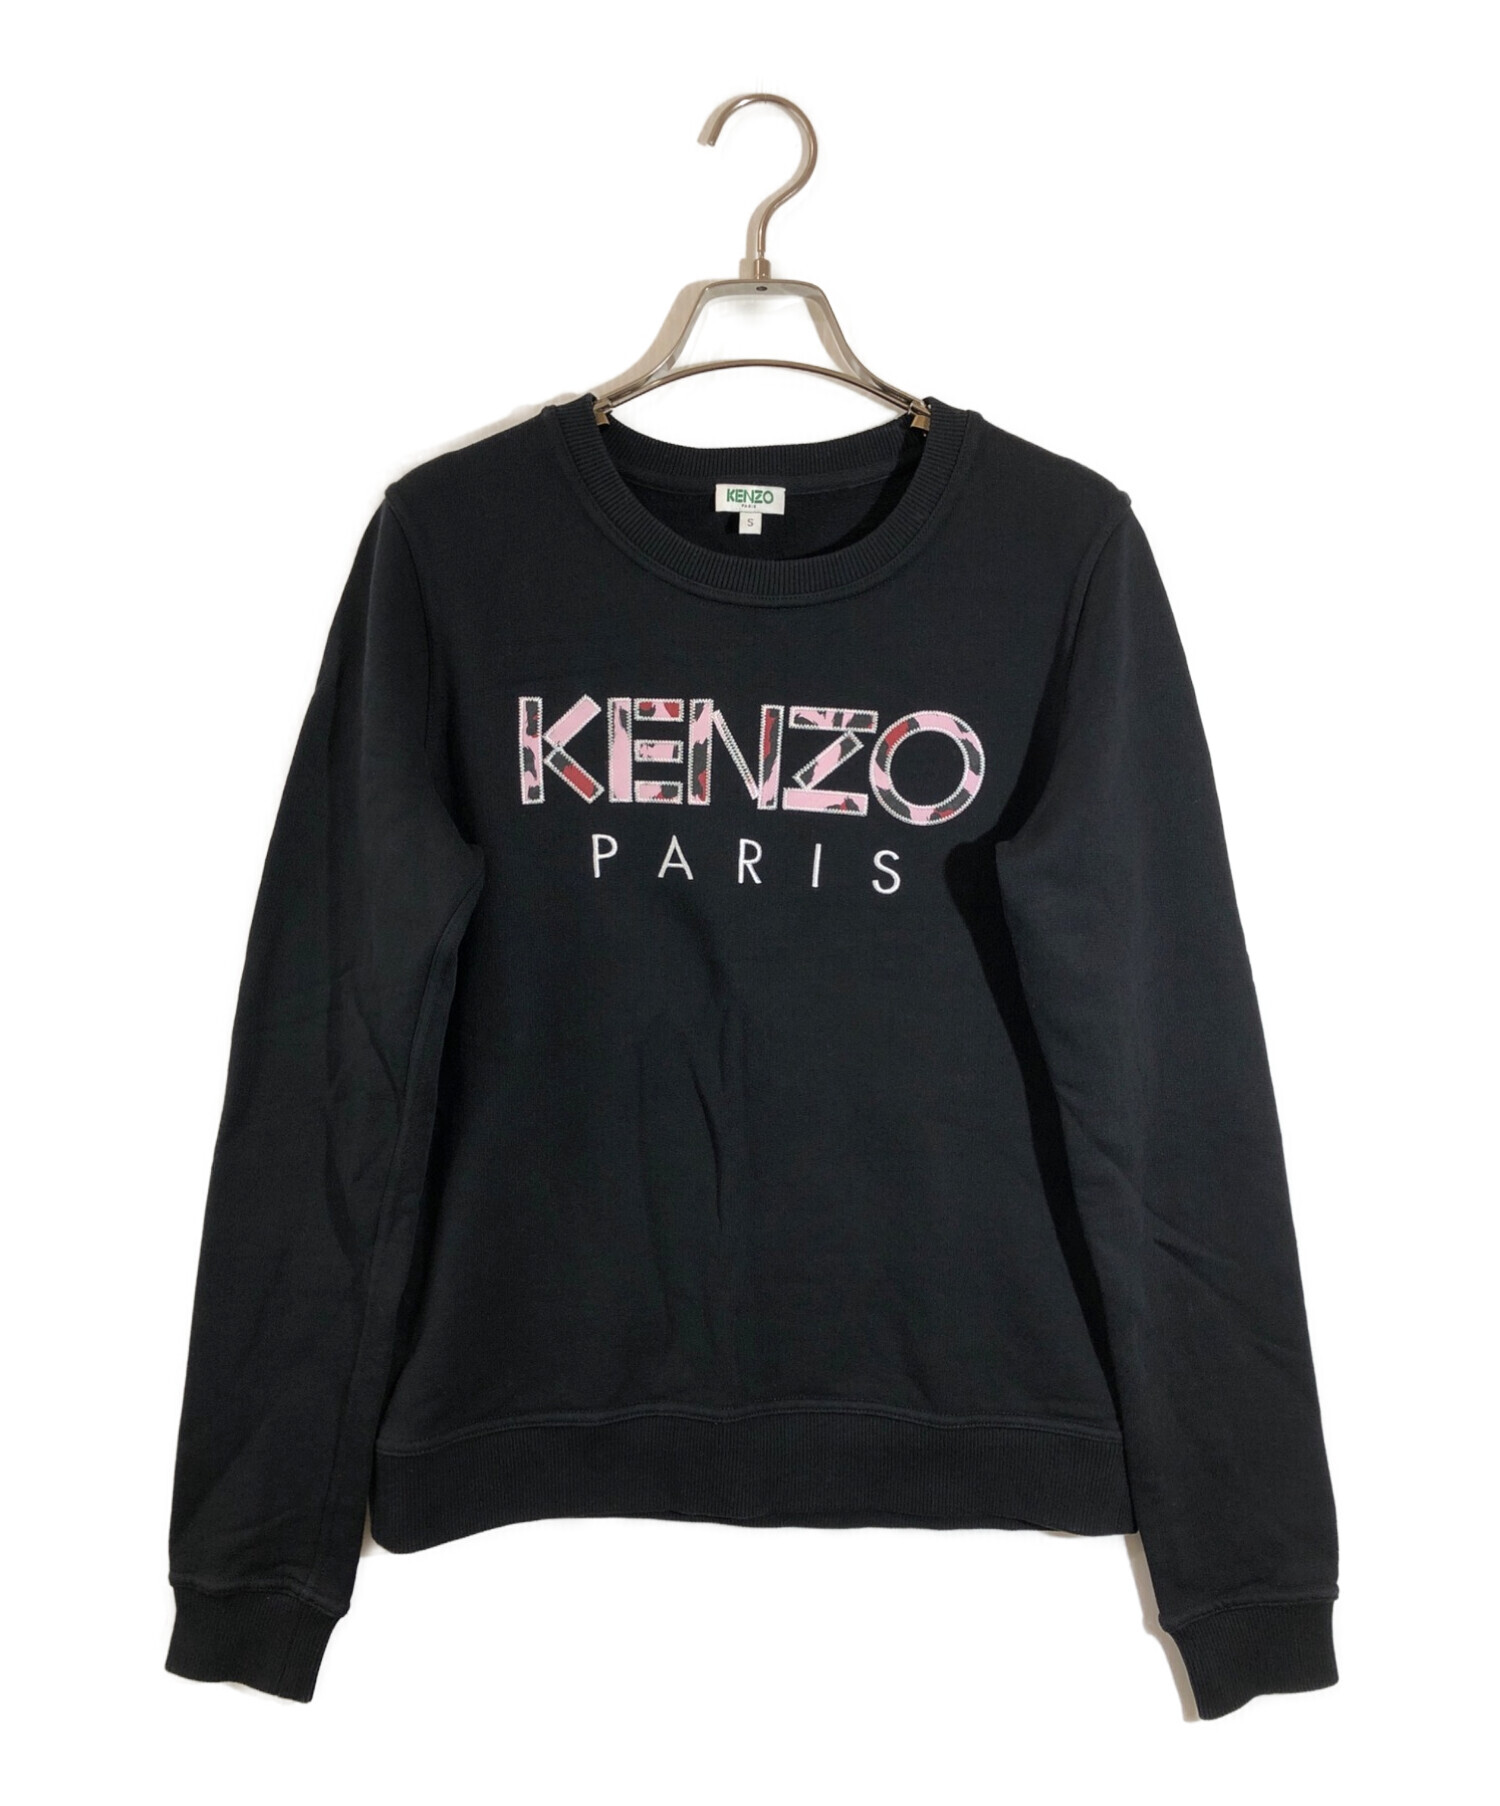 KENZO (ケンゾー) ロゴスウェット ブラック サイズ:S